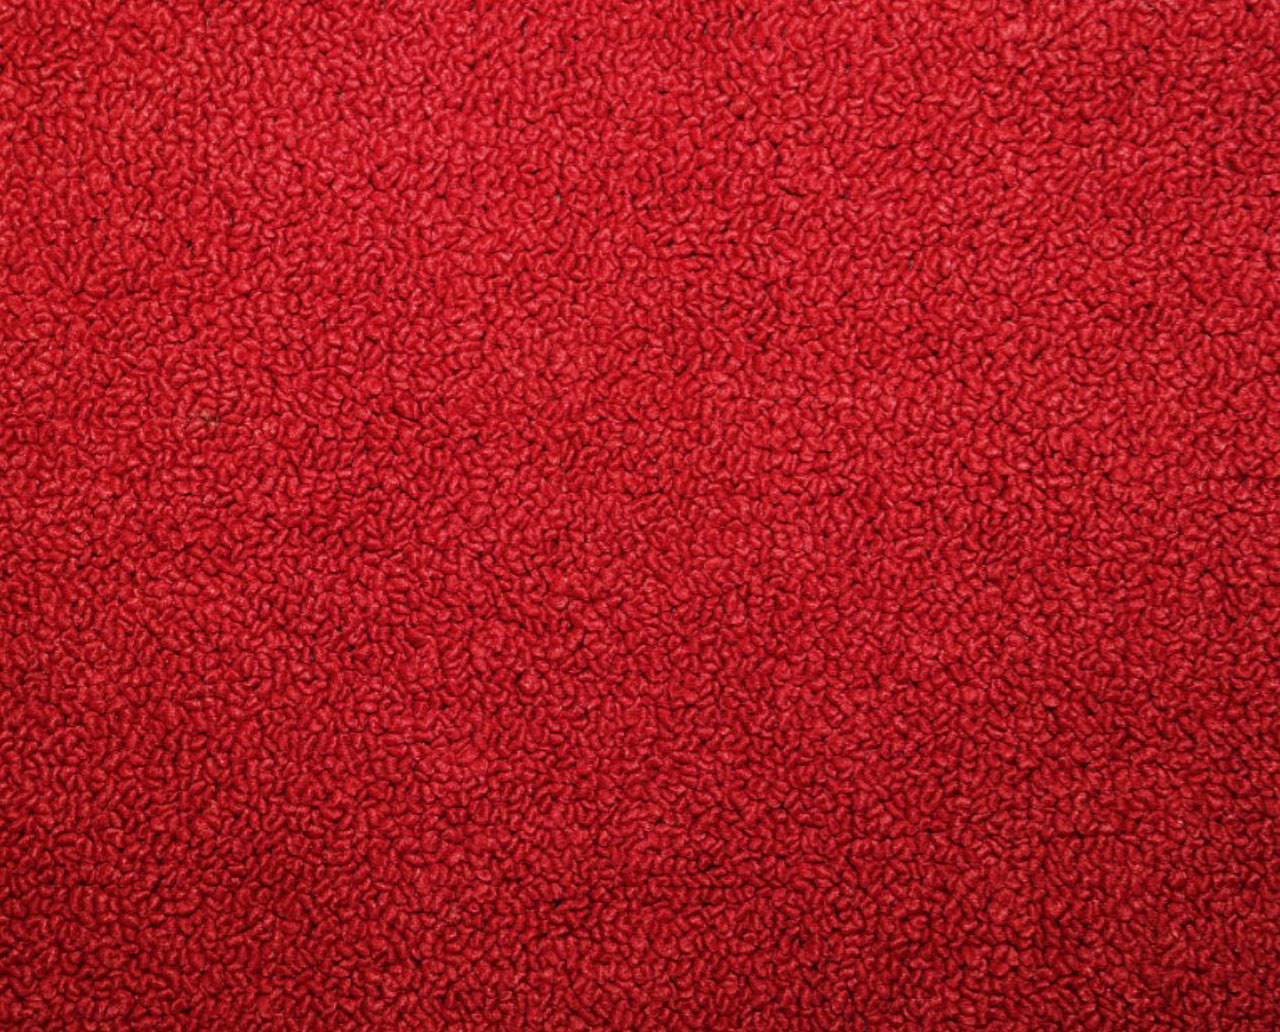 Holden Kingswood HG Kingswood Sedan 12E Baroque Red Carpet (Image 1 of 1)